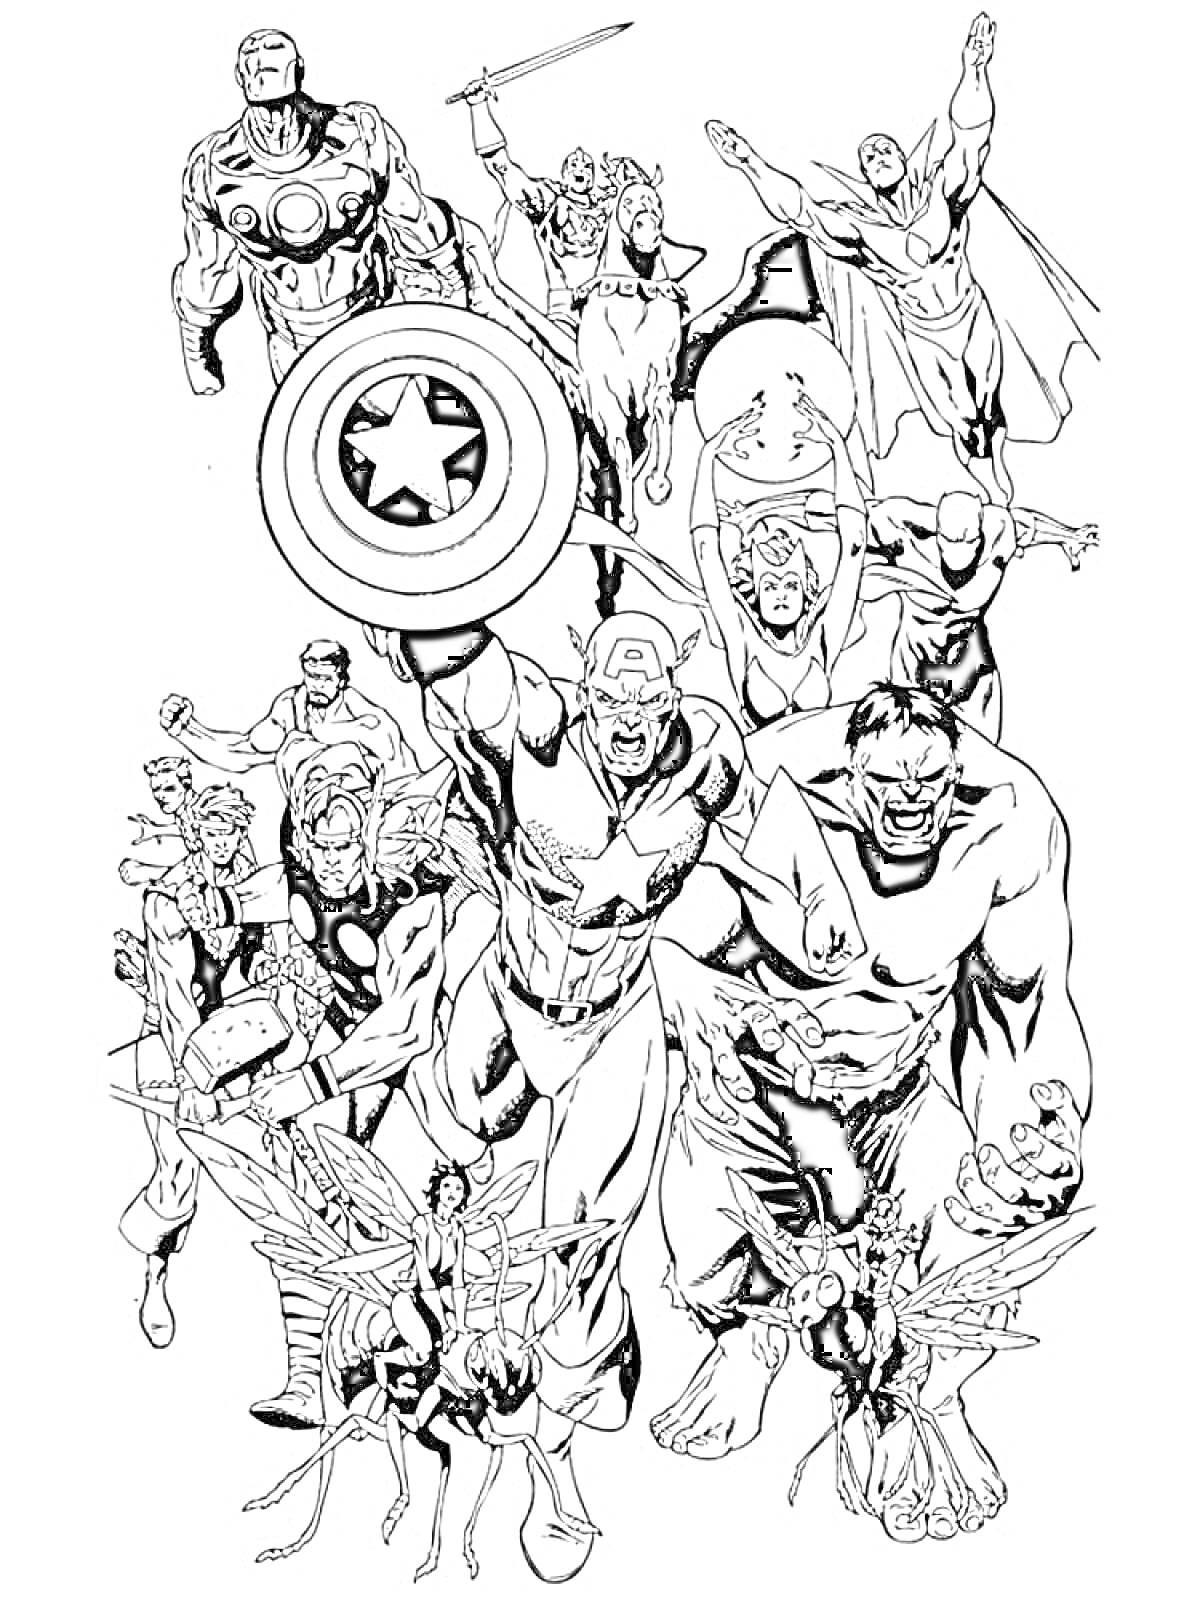 Раскраска Герои Марвел с Капитаном Америкой, Железным Человеком, Халком, Соколом, Тором, Черной Вдовой, Соколиным Глазом и Человеком-Муравьем